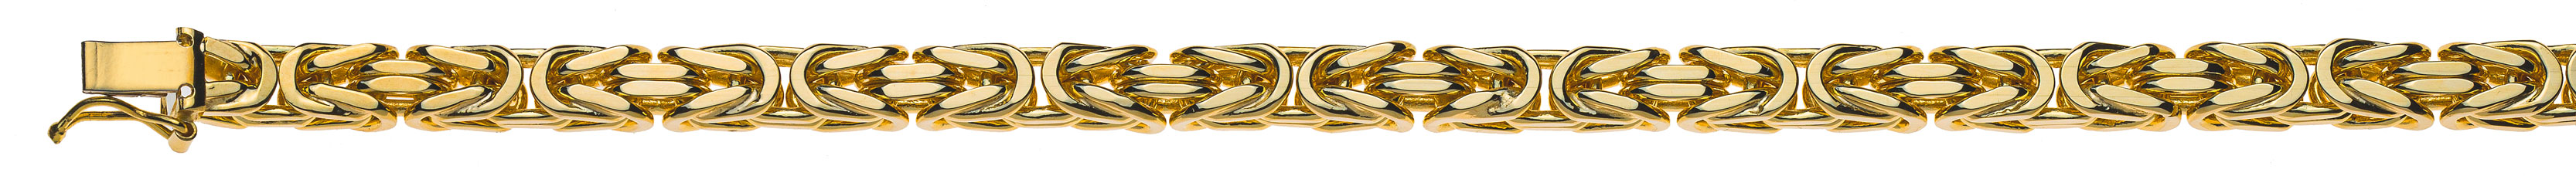 AURONOS Prestige Collier en or jaune 18K chaîne royale 50cm 5mm